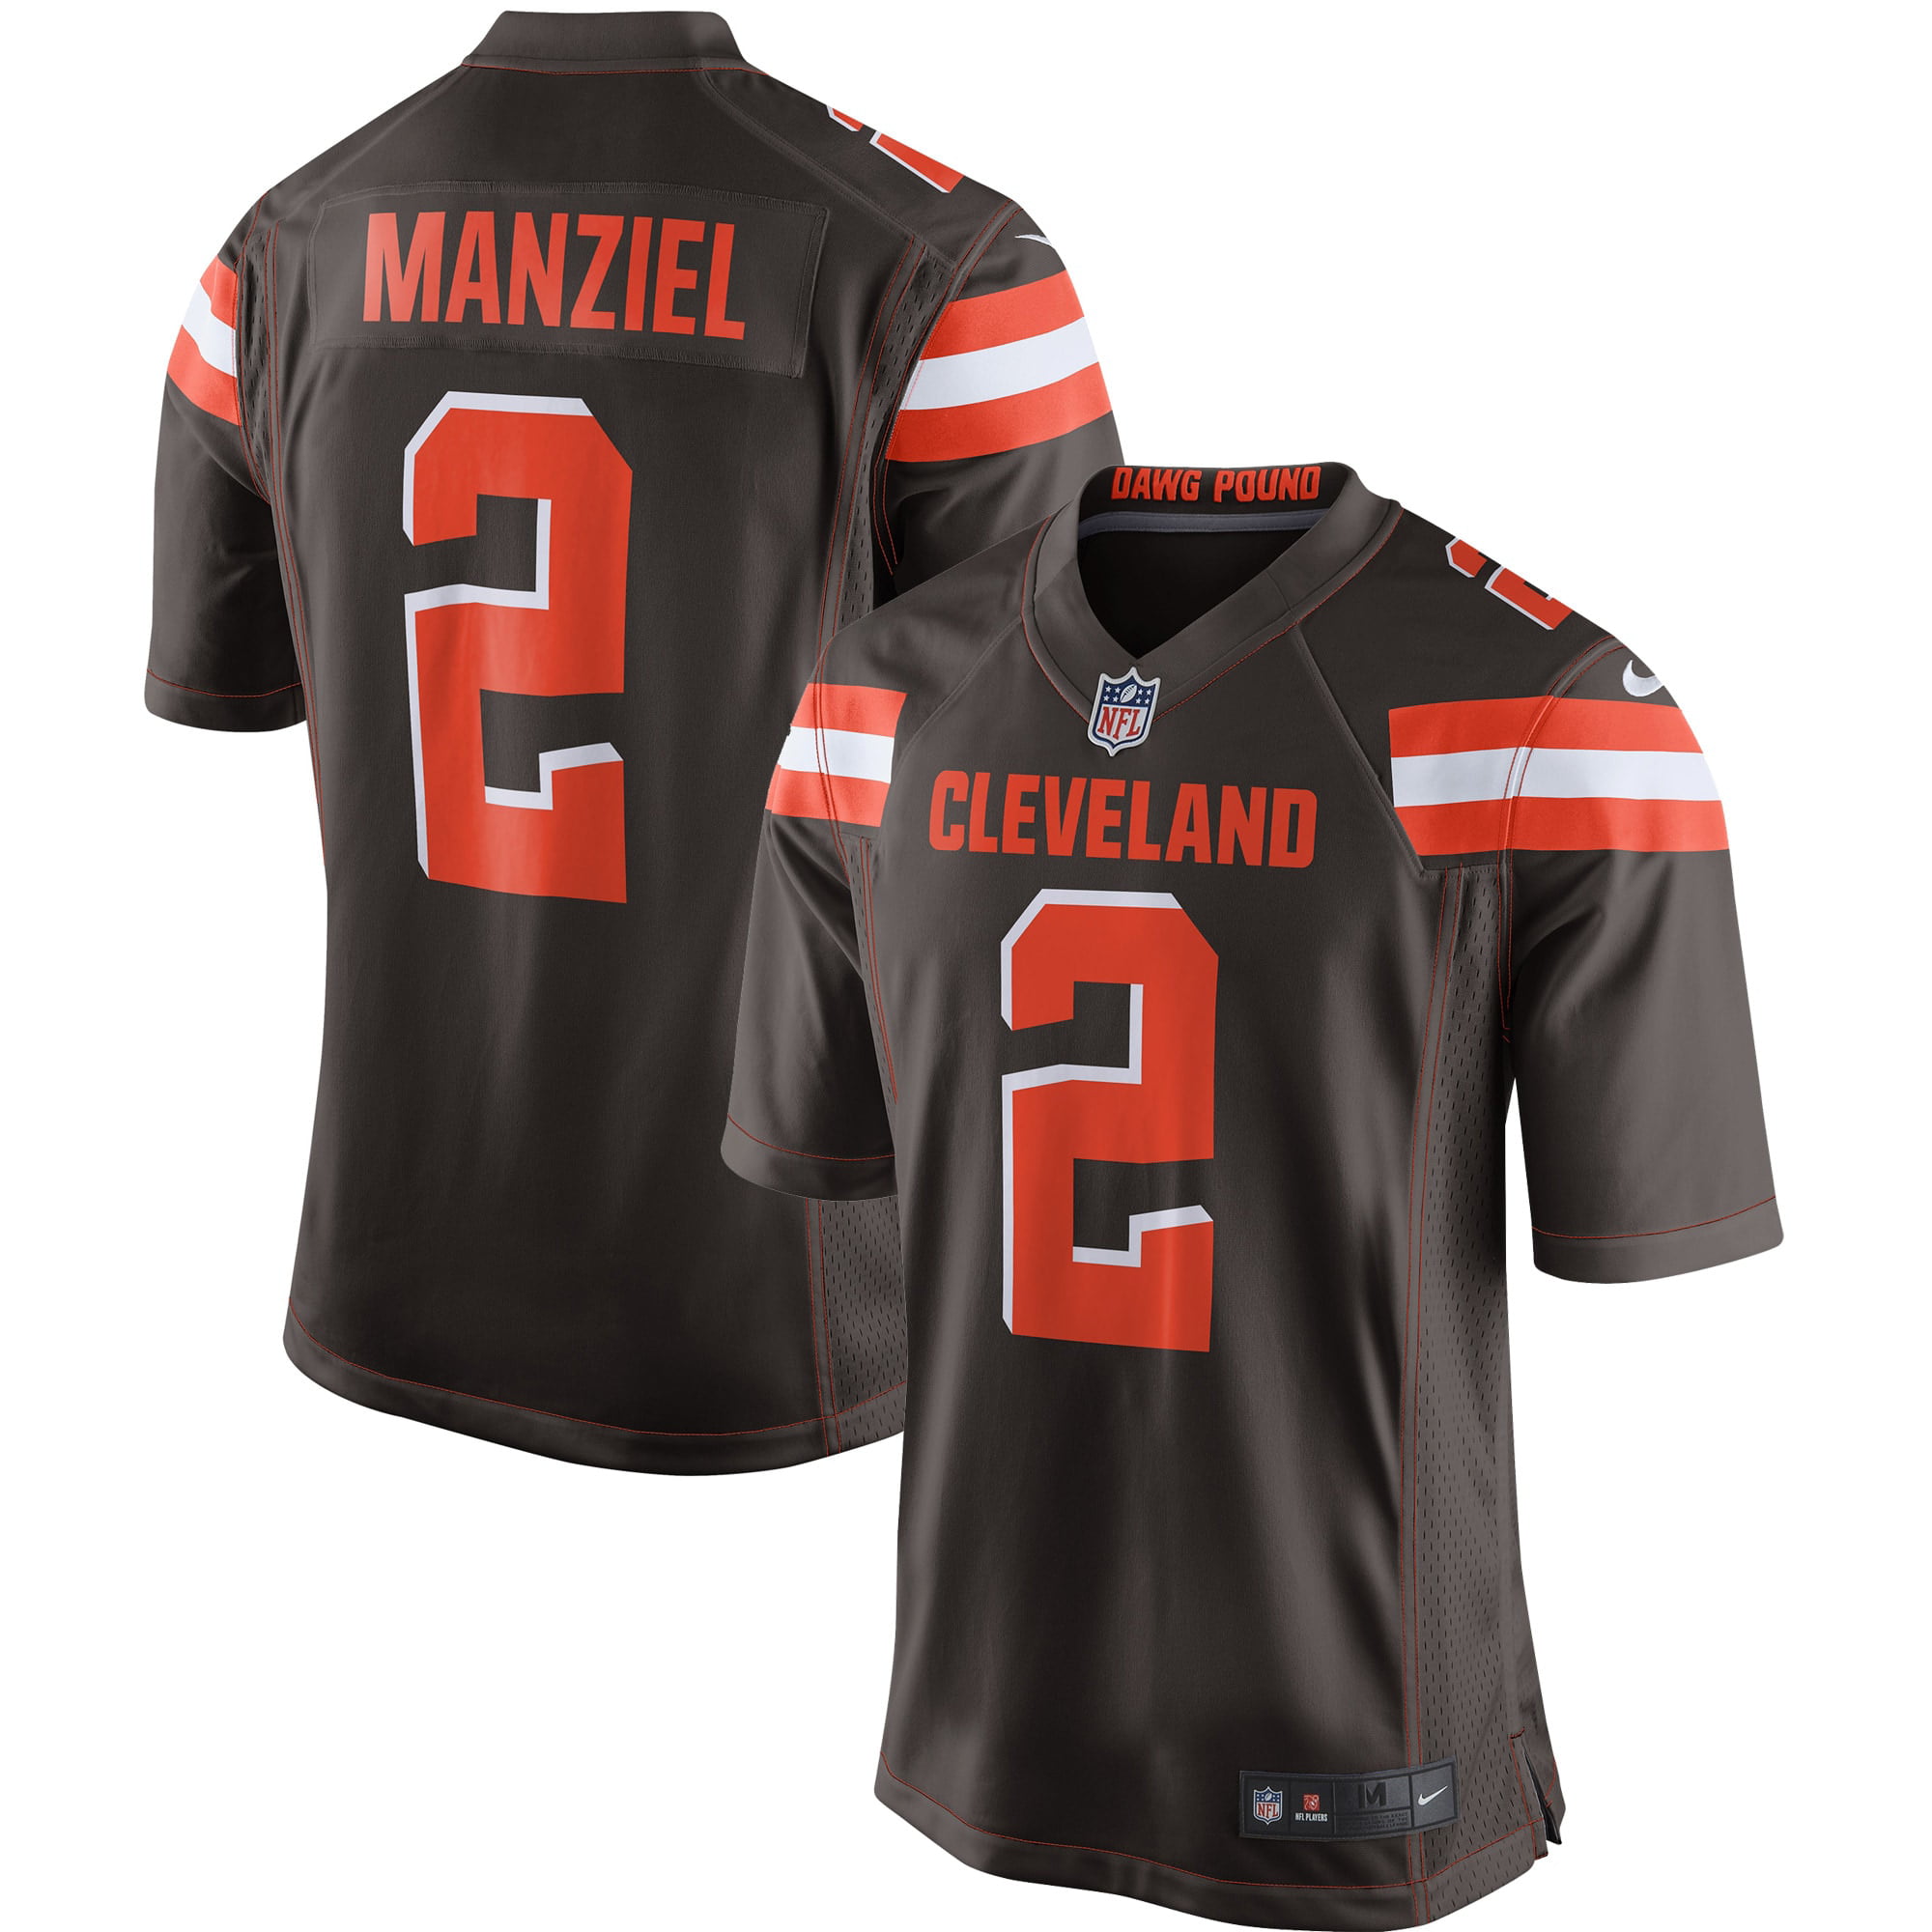 الارز Johnny Manziel Cleveland Browns Jersey on Sale, 55% OFF | www ... الارز